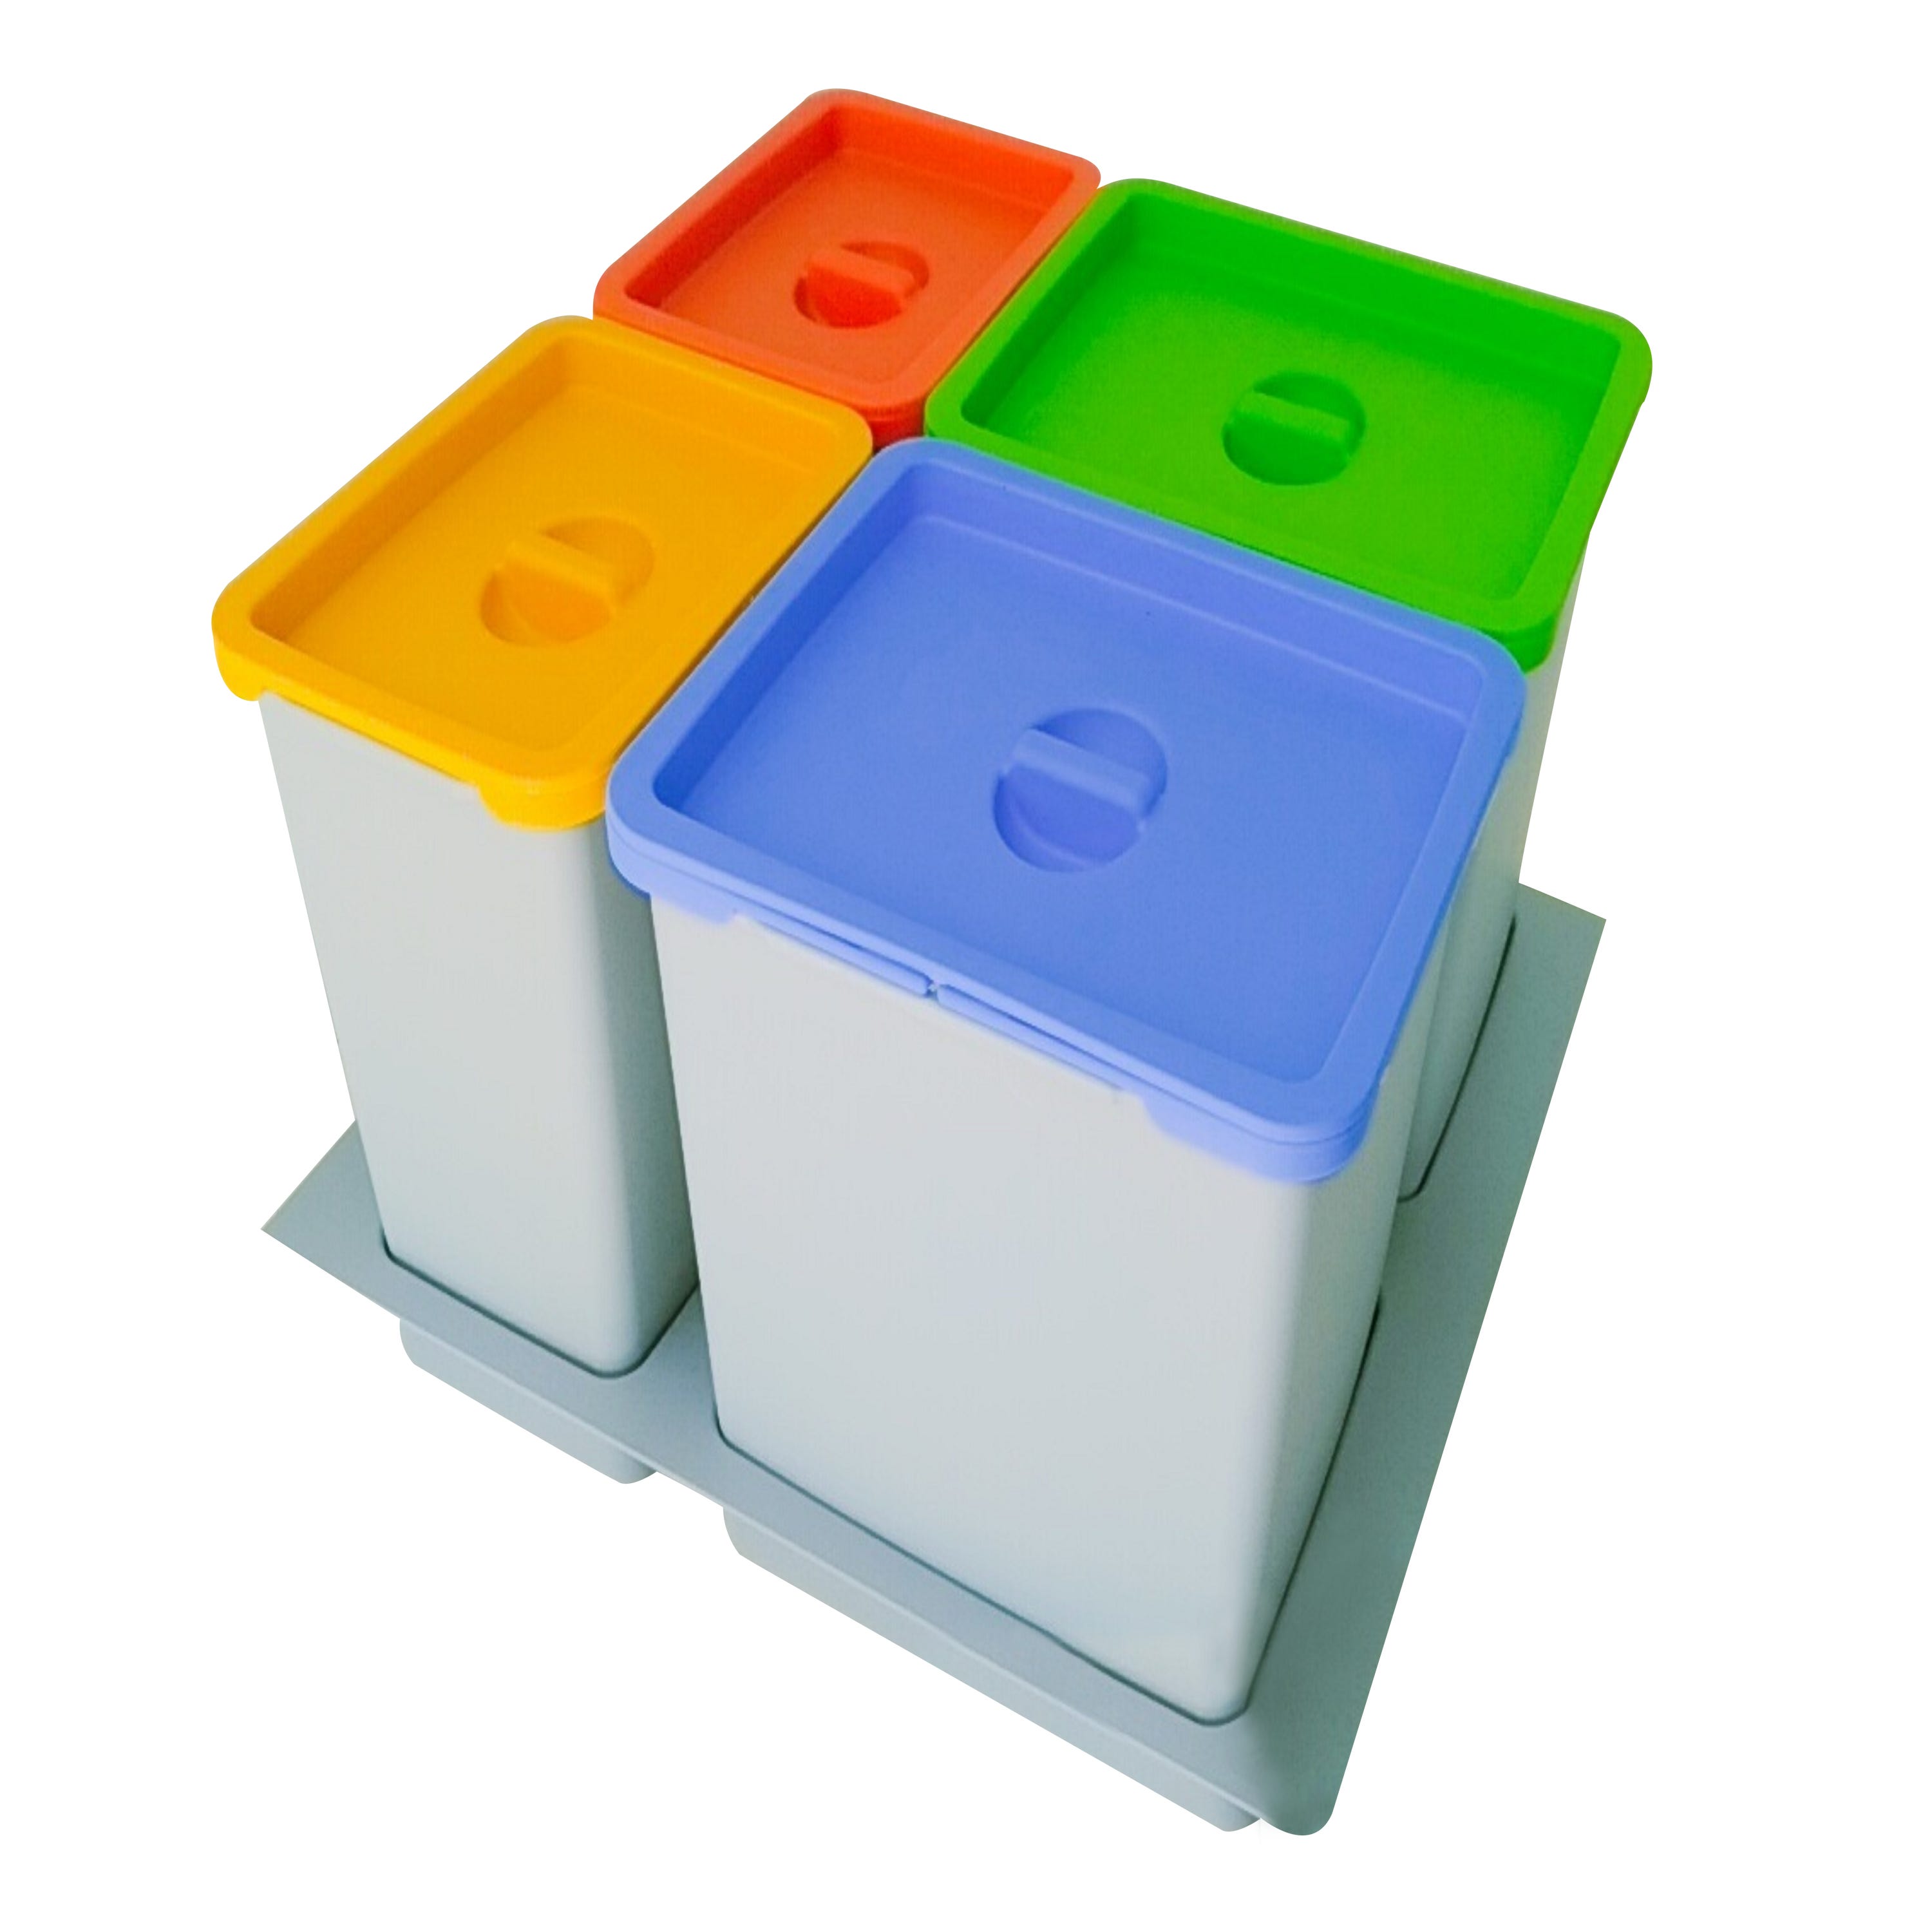 Cubo de basura rectangular para cajón de cocina